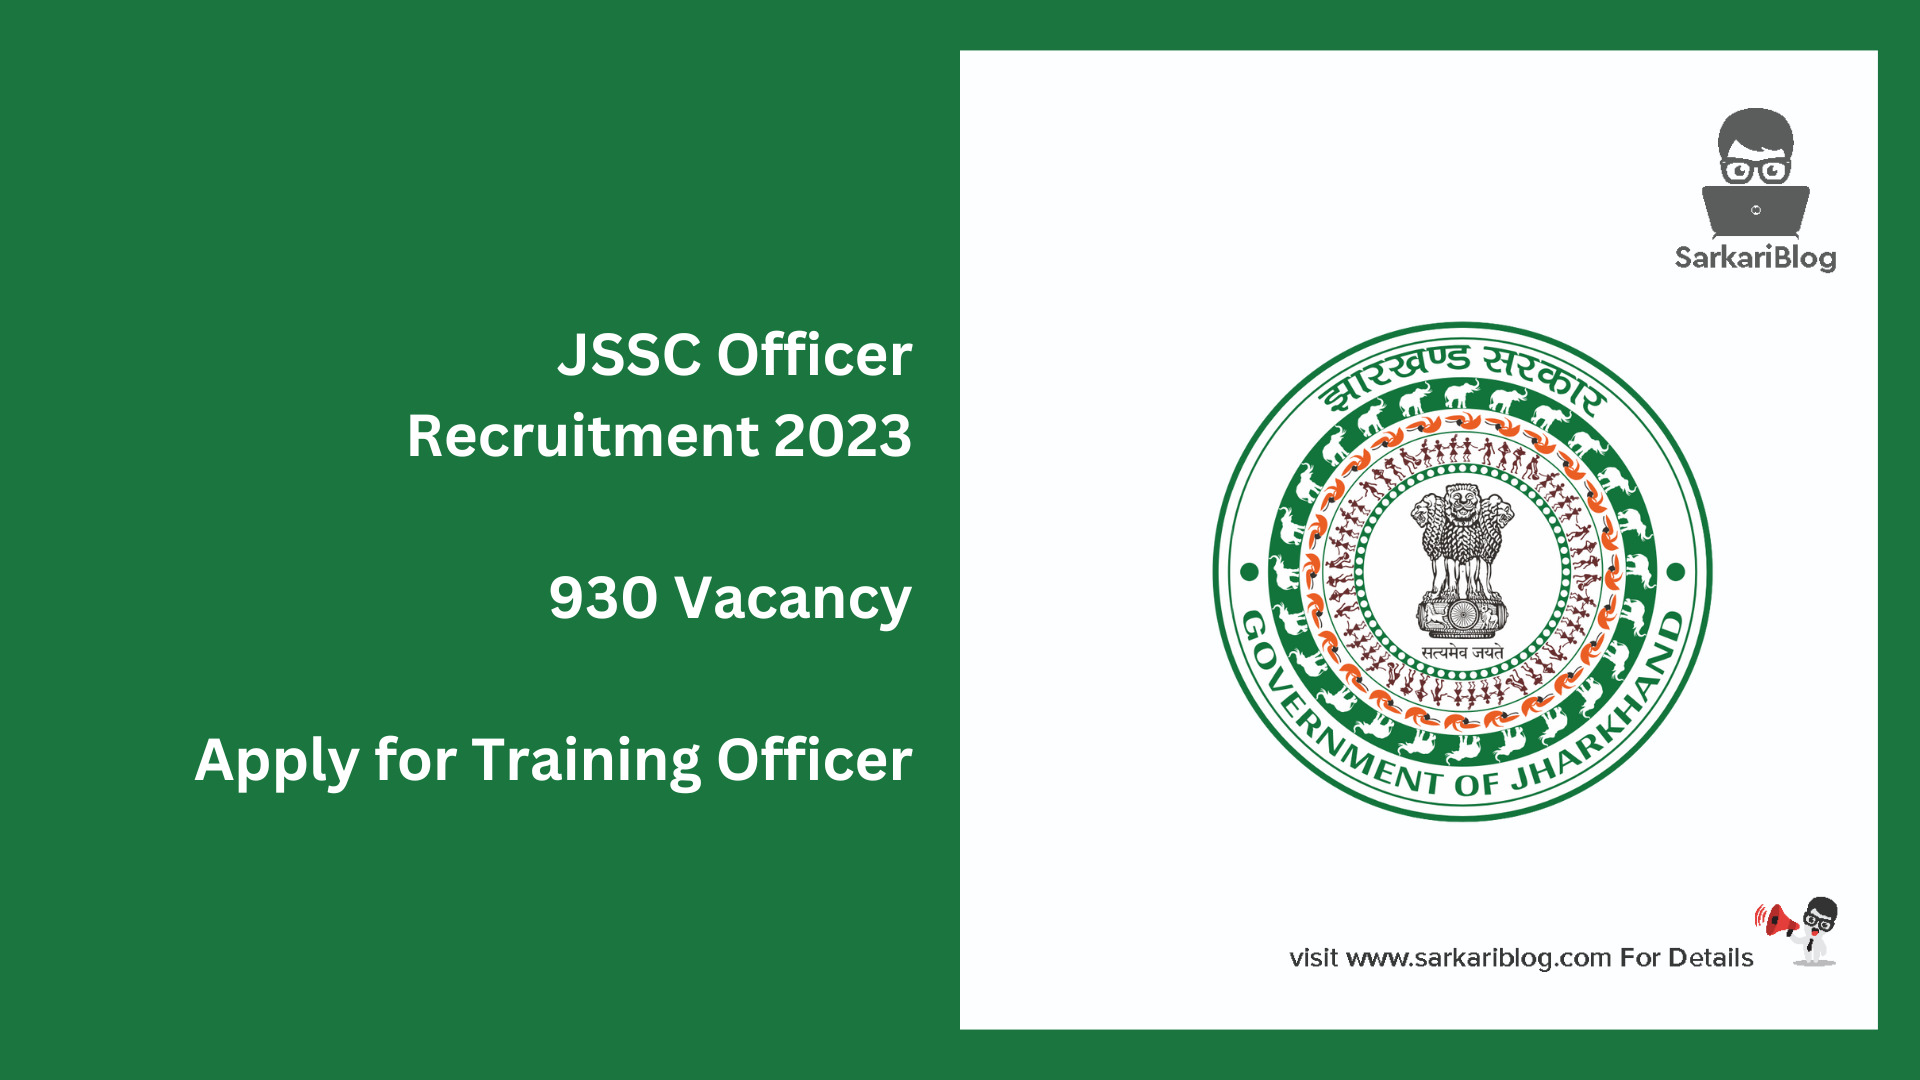 JSSC Officer Recruitment 2023